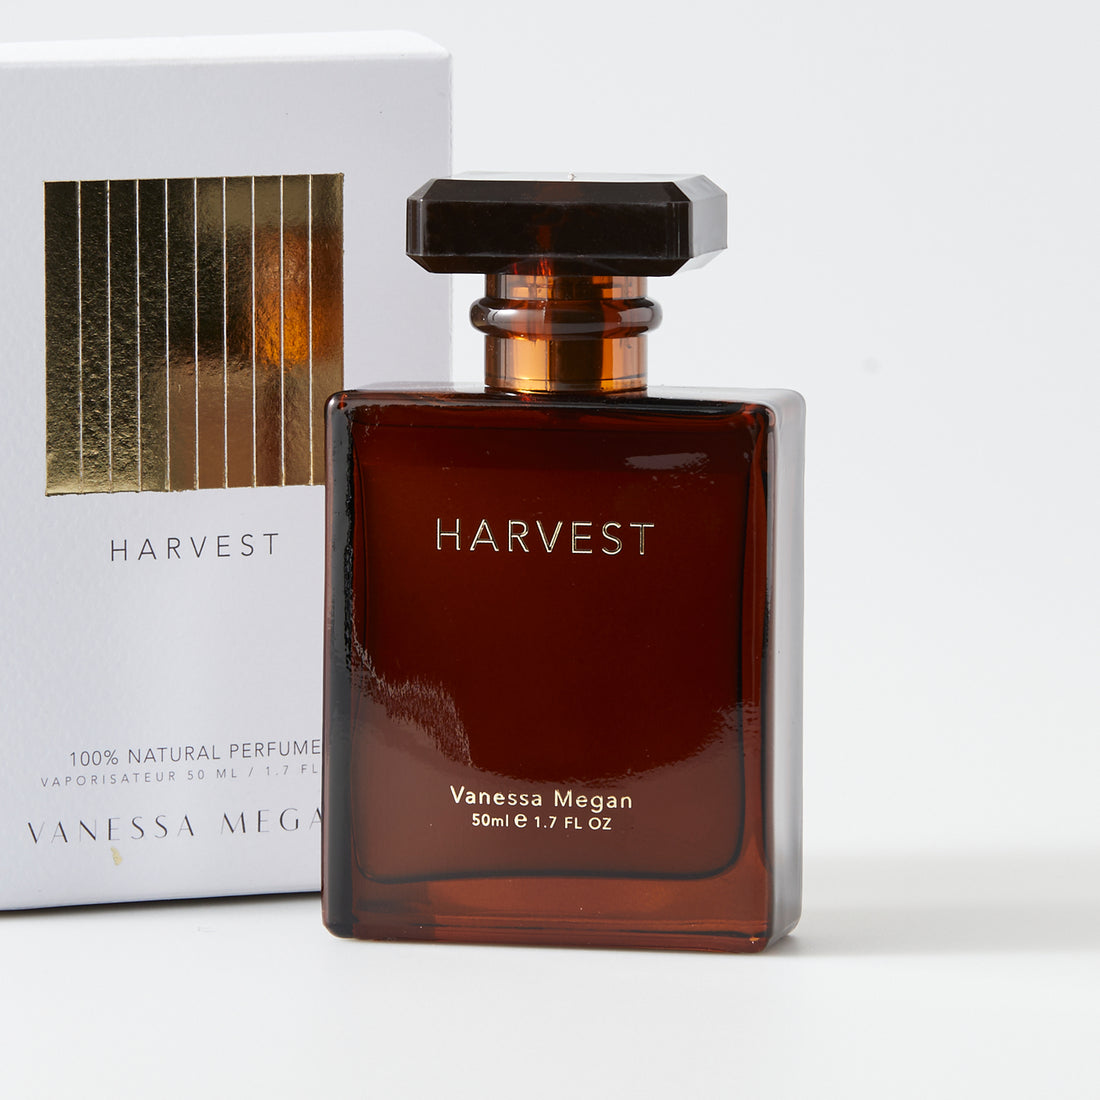 Vanessa Megan Harvest 50ml natural perfume